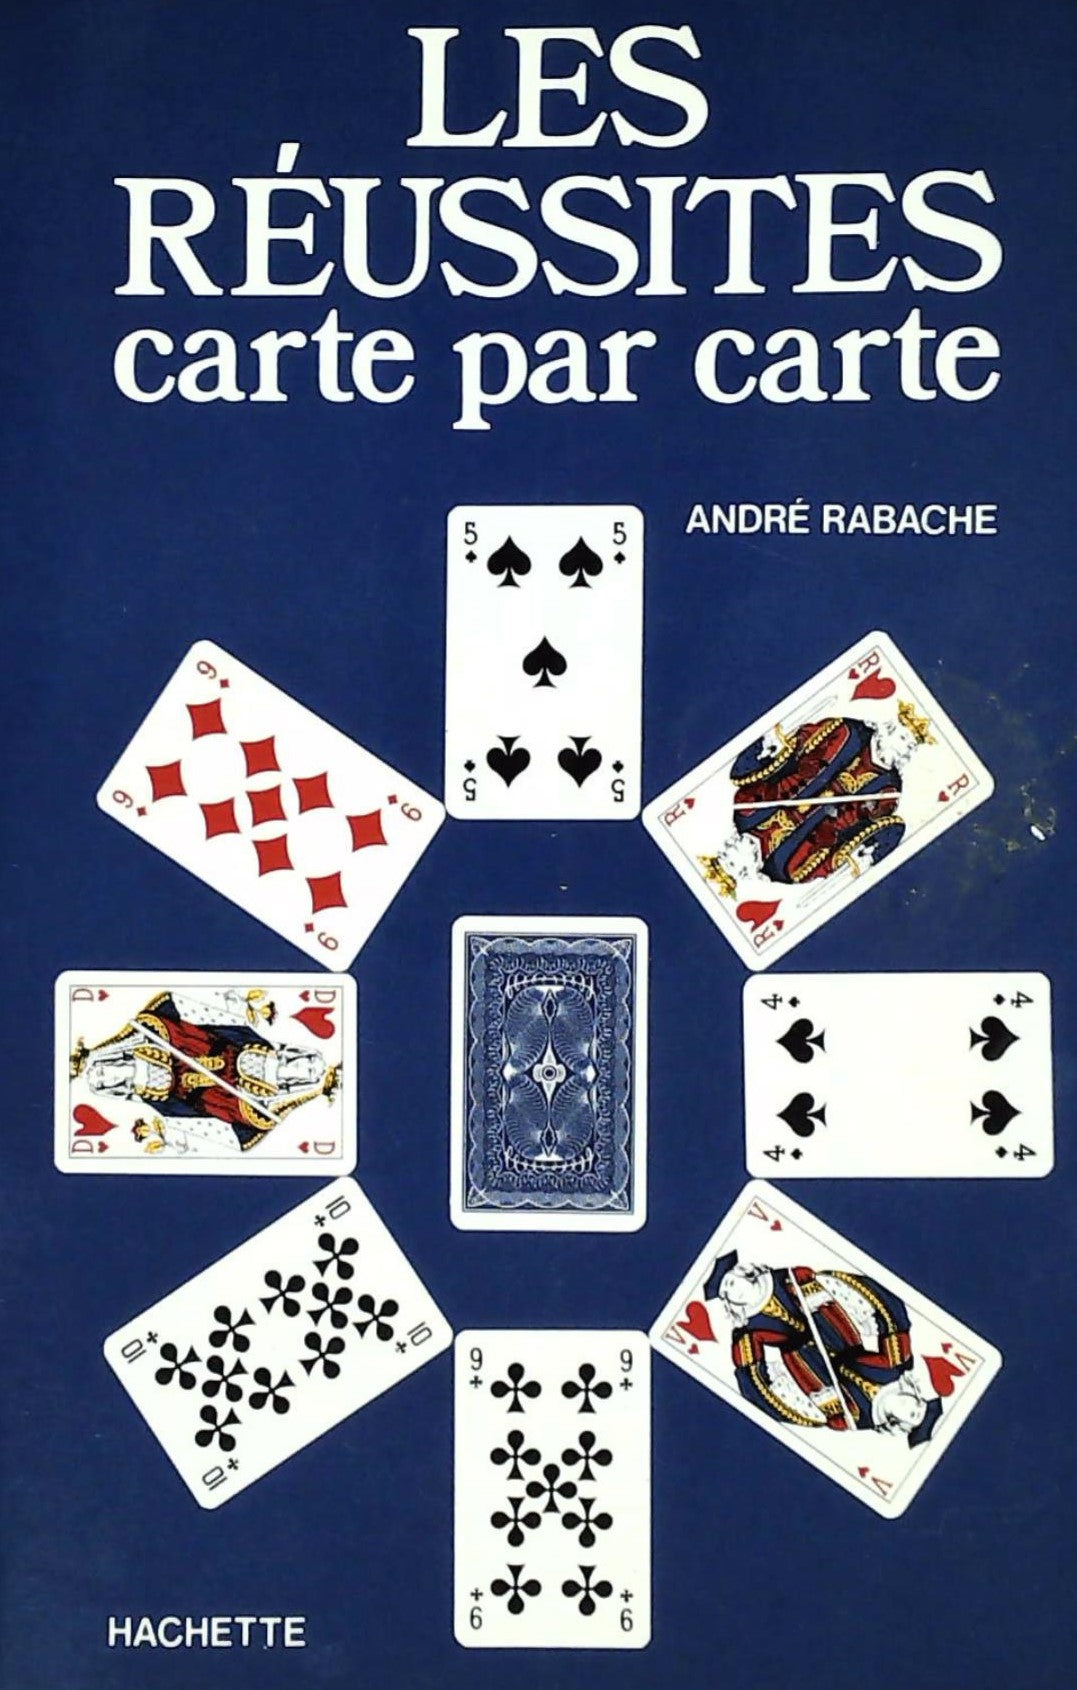 Livre ISBN 2010037871 Les réussites carte par carte (André Rabache)